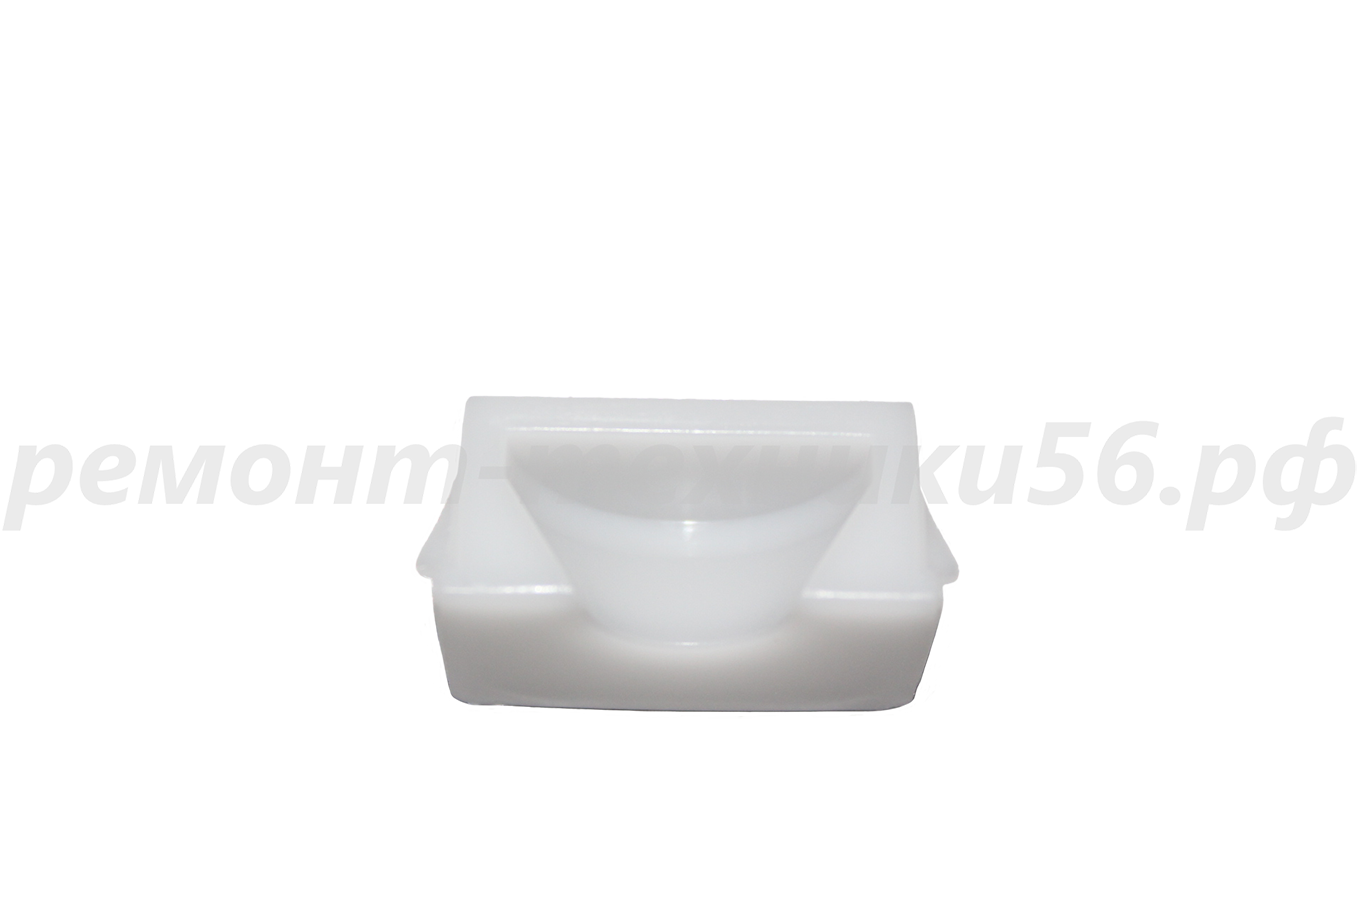 Подшипник скольжения передний Electrolux EHAW - 7515D white (сенсорное упр.) по выгодной цене фото7